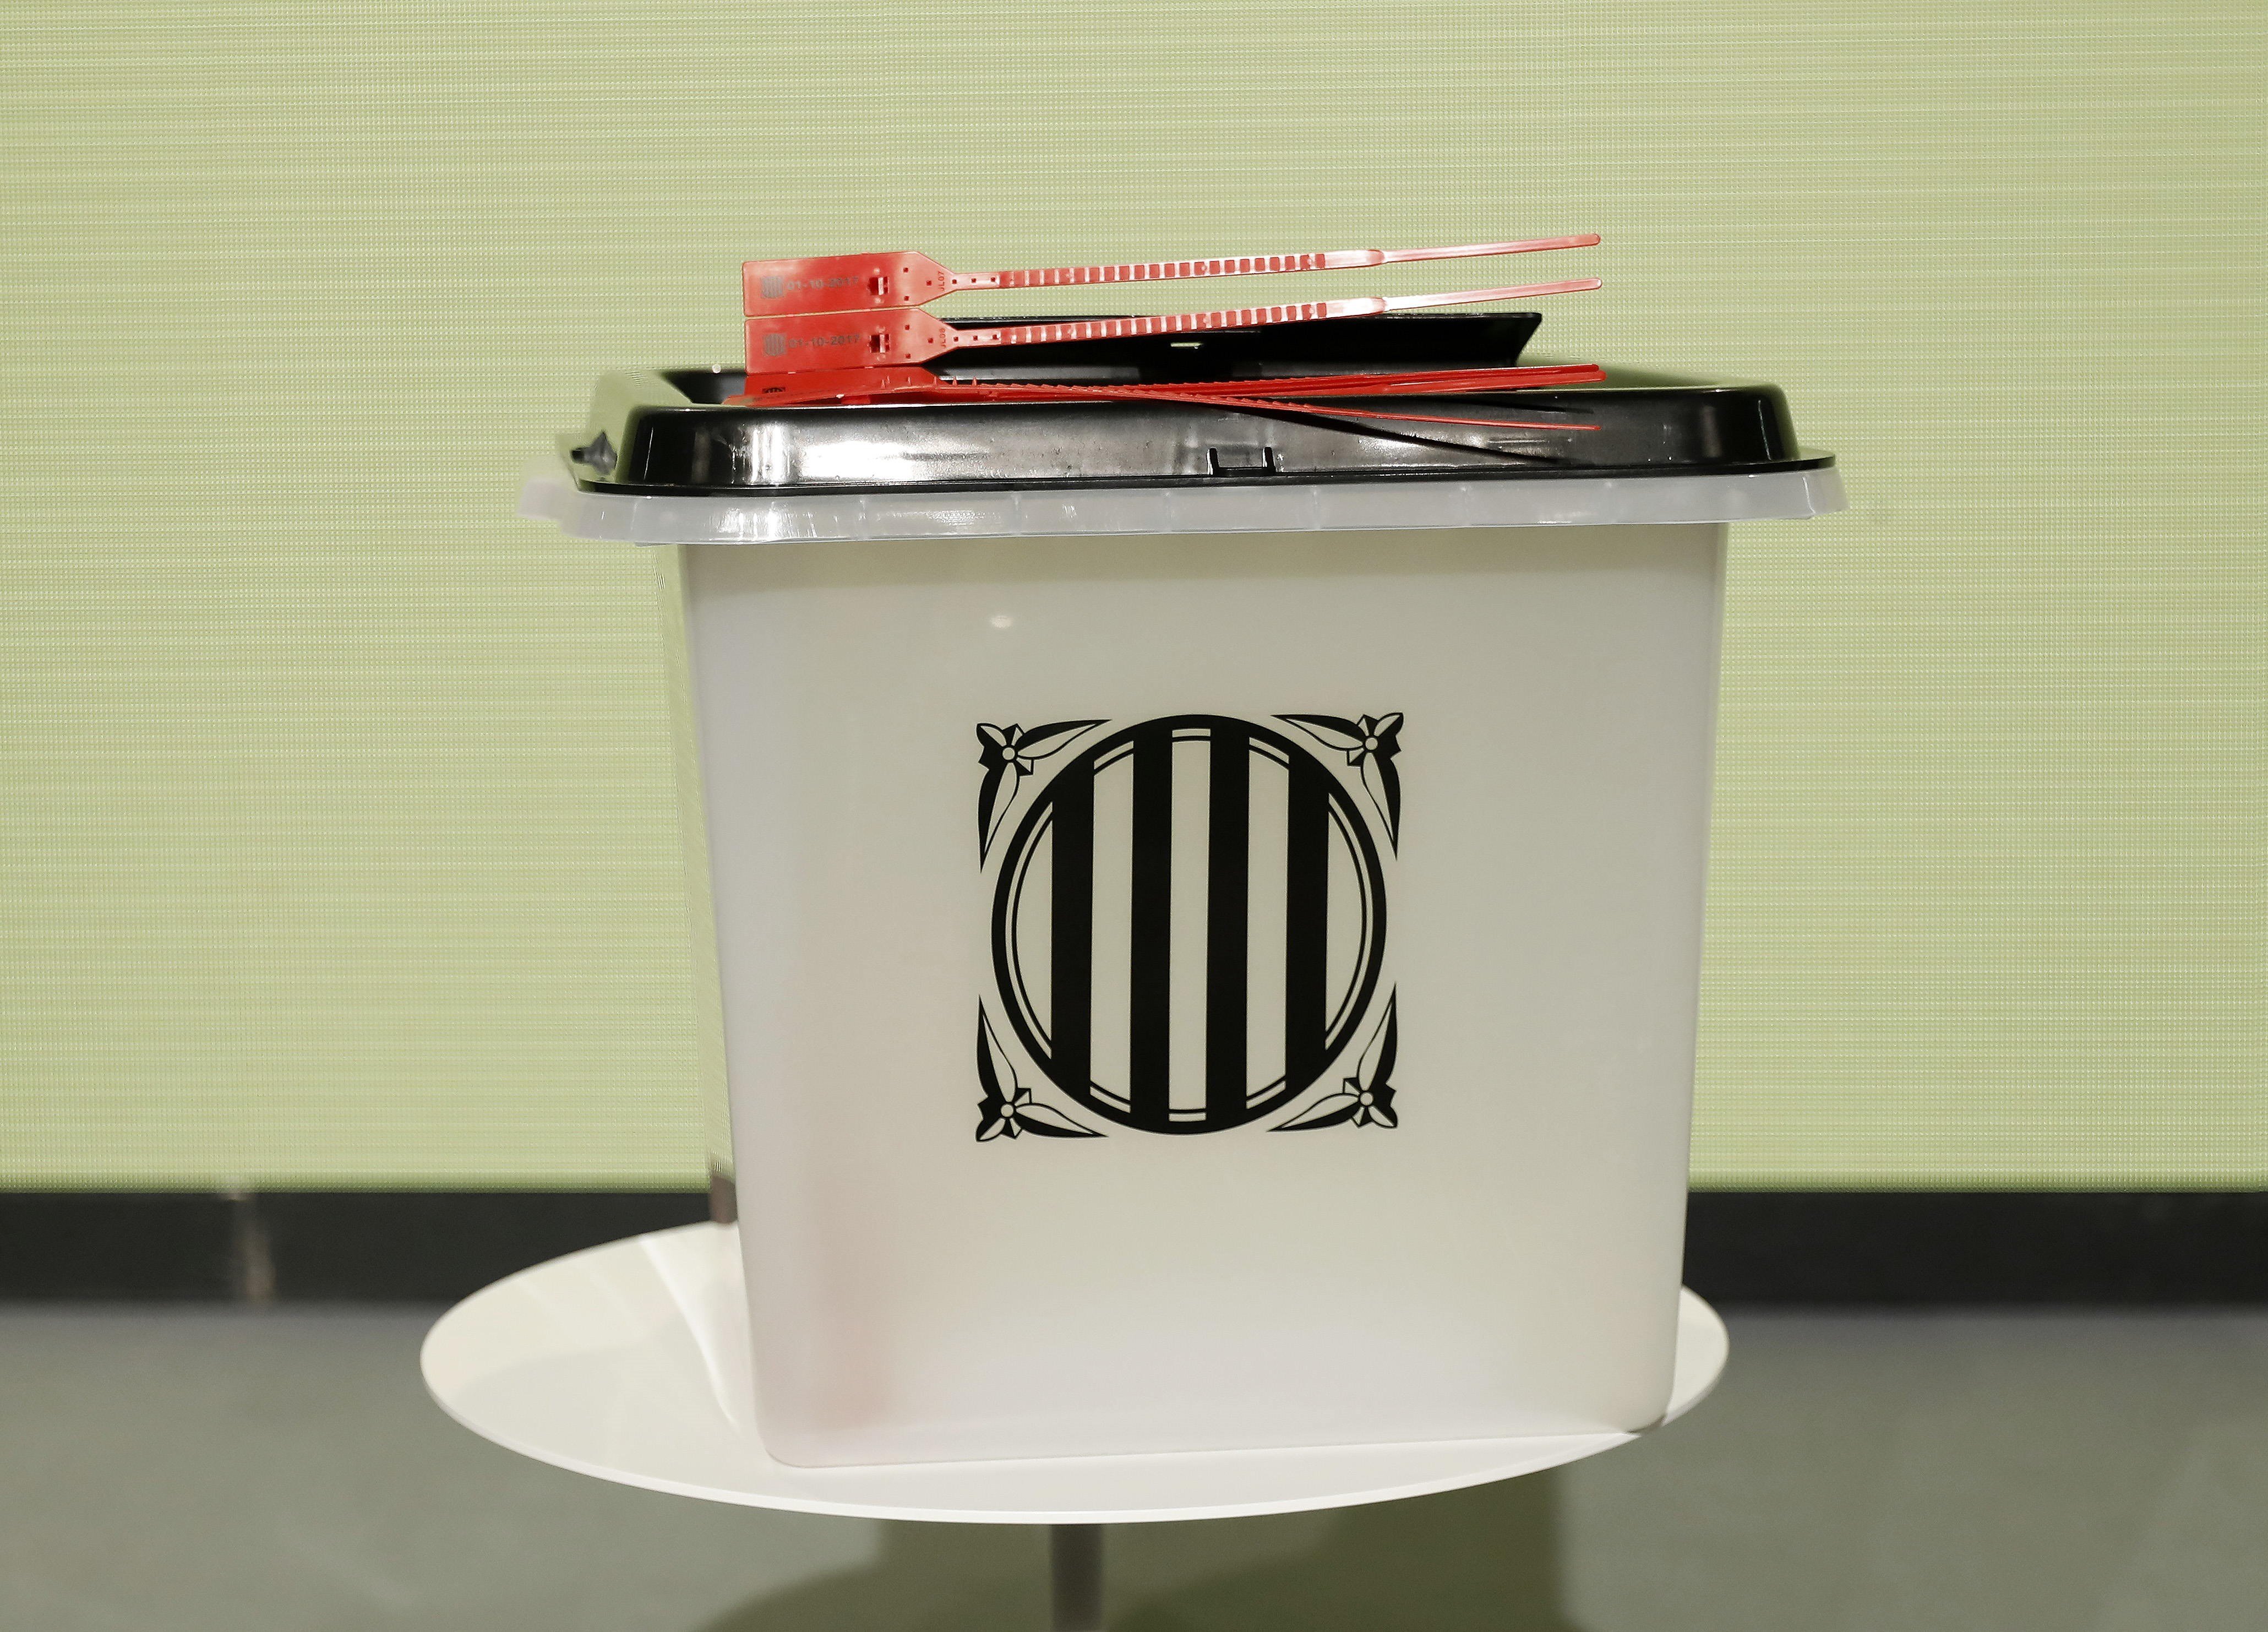 La Junta Electoral Central anula los resultados del 1-O: "No fue un referéndum"